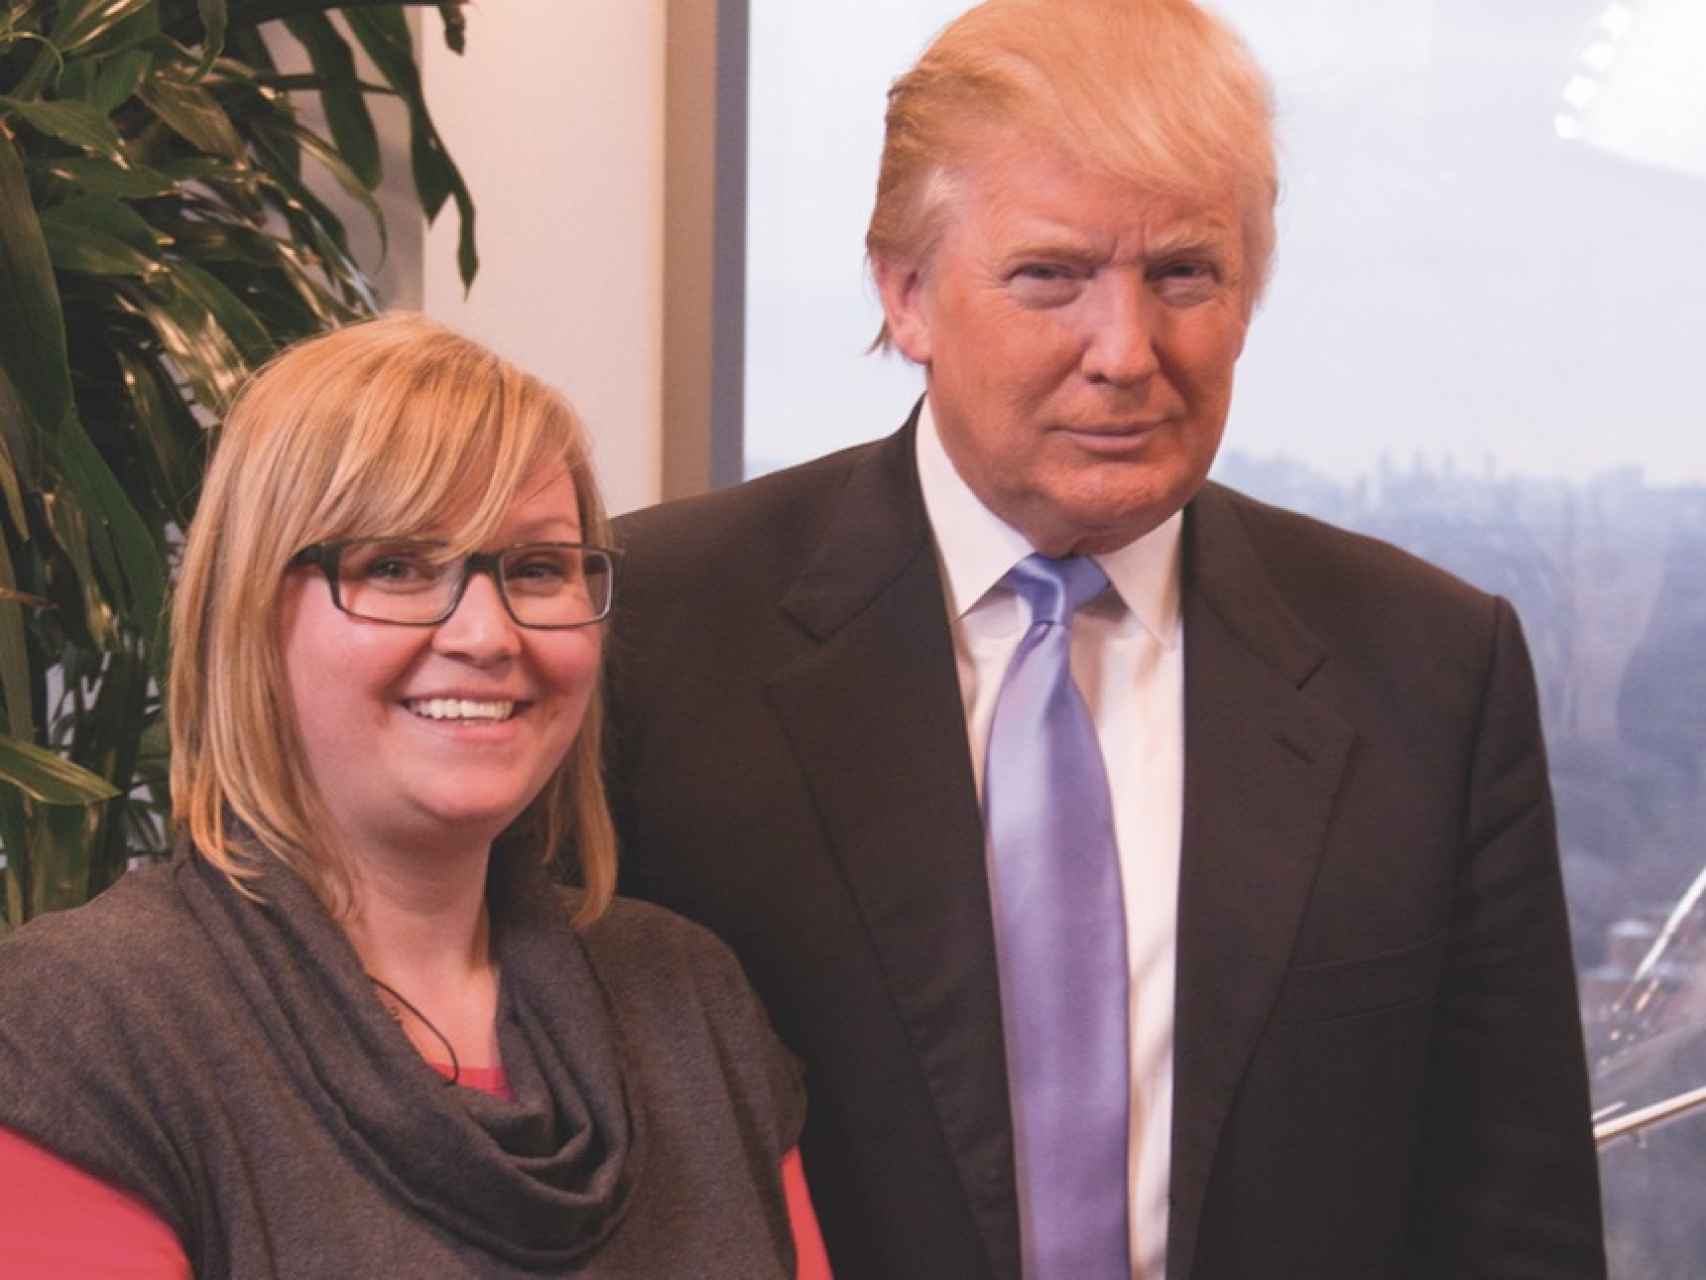 Simone Wendel, una cineasta de Kallstadt y familiar lejana de Donald Trump, junto al presidente electo.